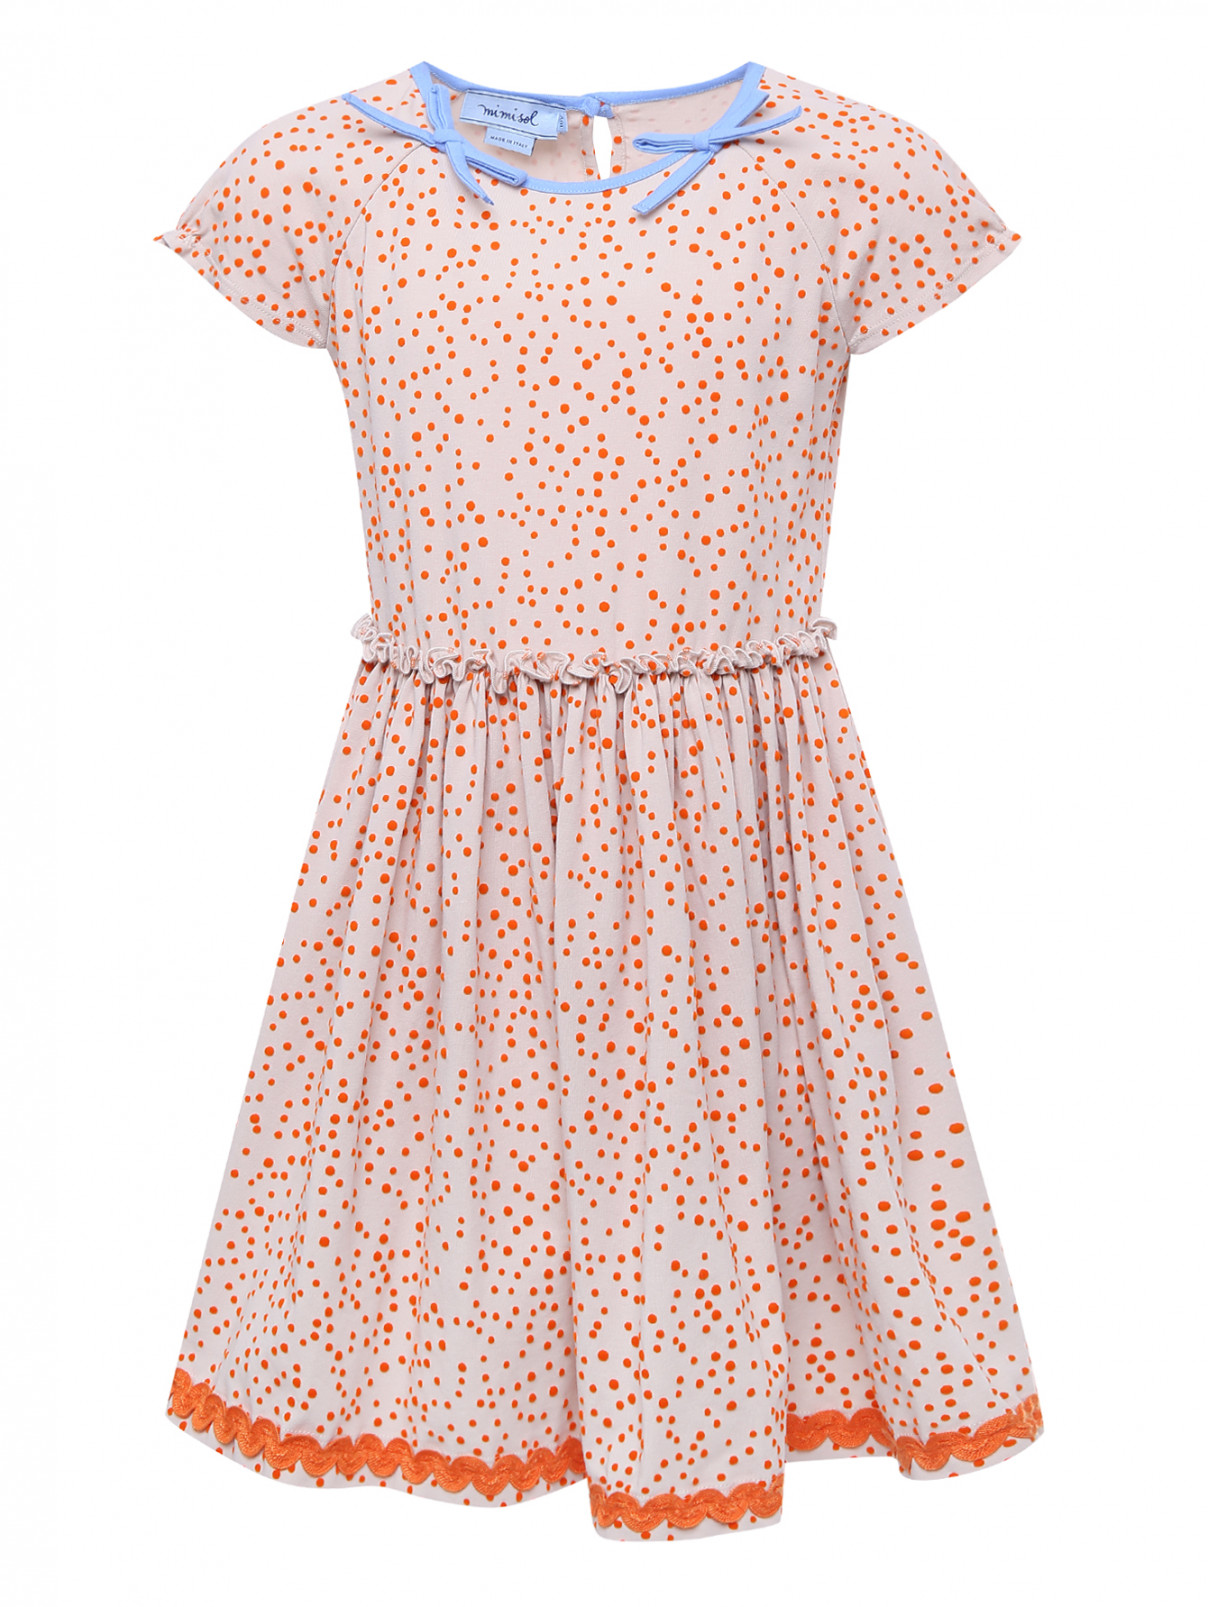 Трикотажное платье с фактурным узором MiMiSol  –  Общий вид  – Цвет:  Бежевый